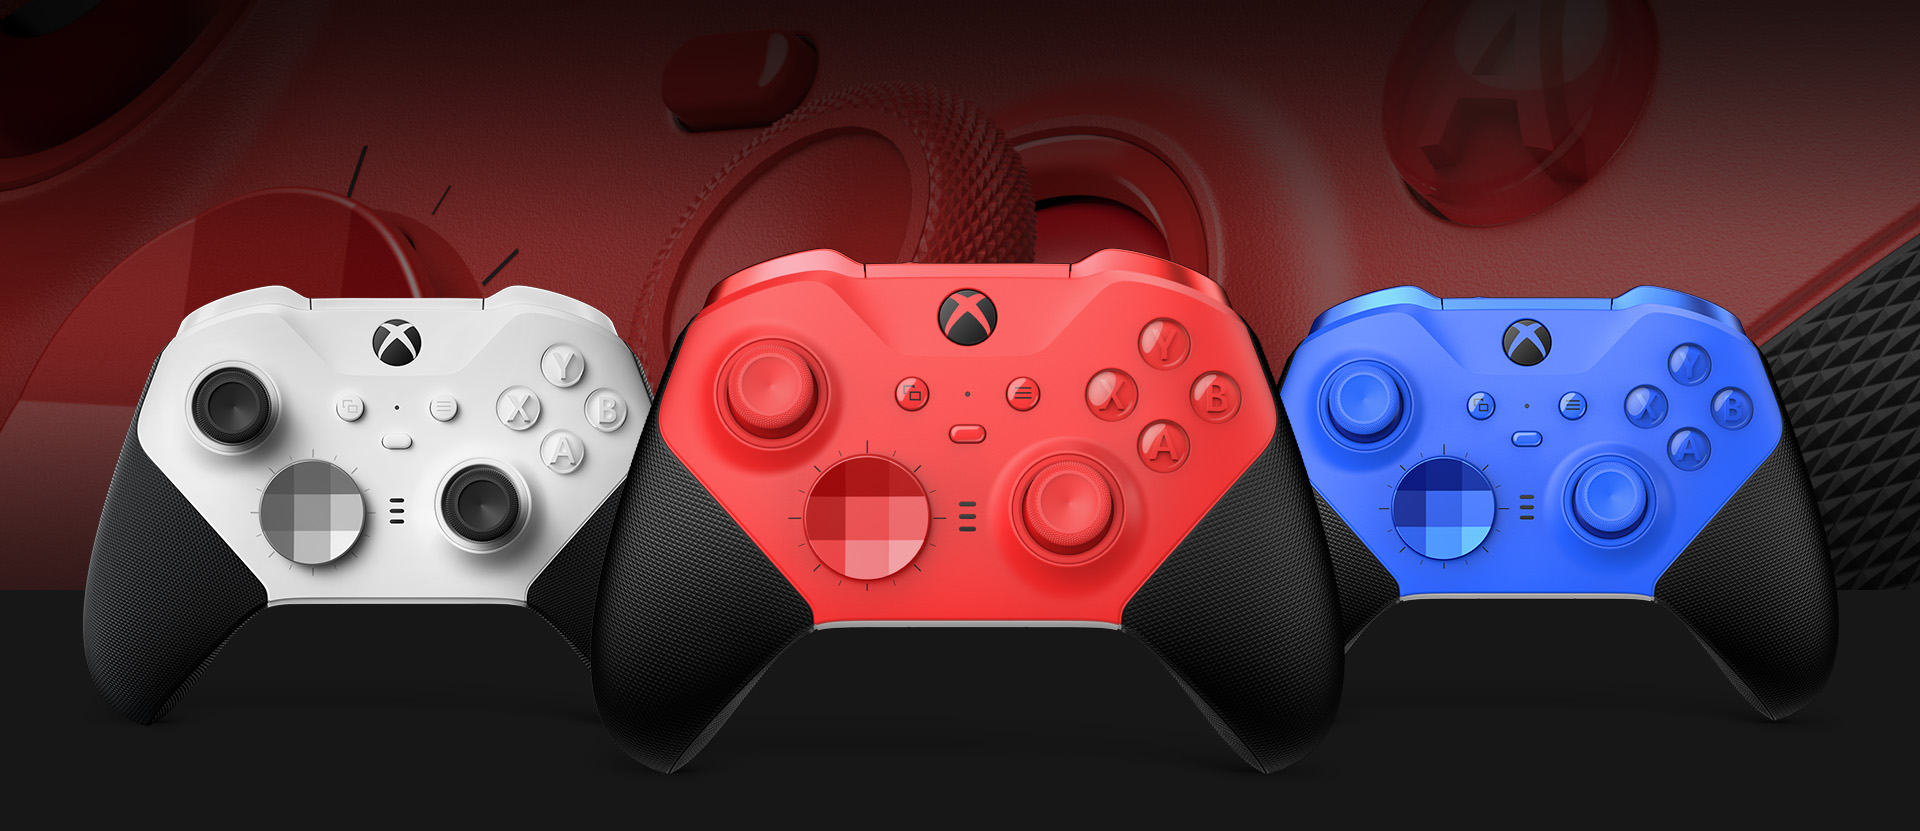 Manette sans fil Xbox Elite Series 2 - Core (Rouge) vue de face avec les autres couleurs présentées à côté et un gros plan sur le joystick et la matière de la manette en arrière-plan.